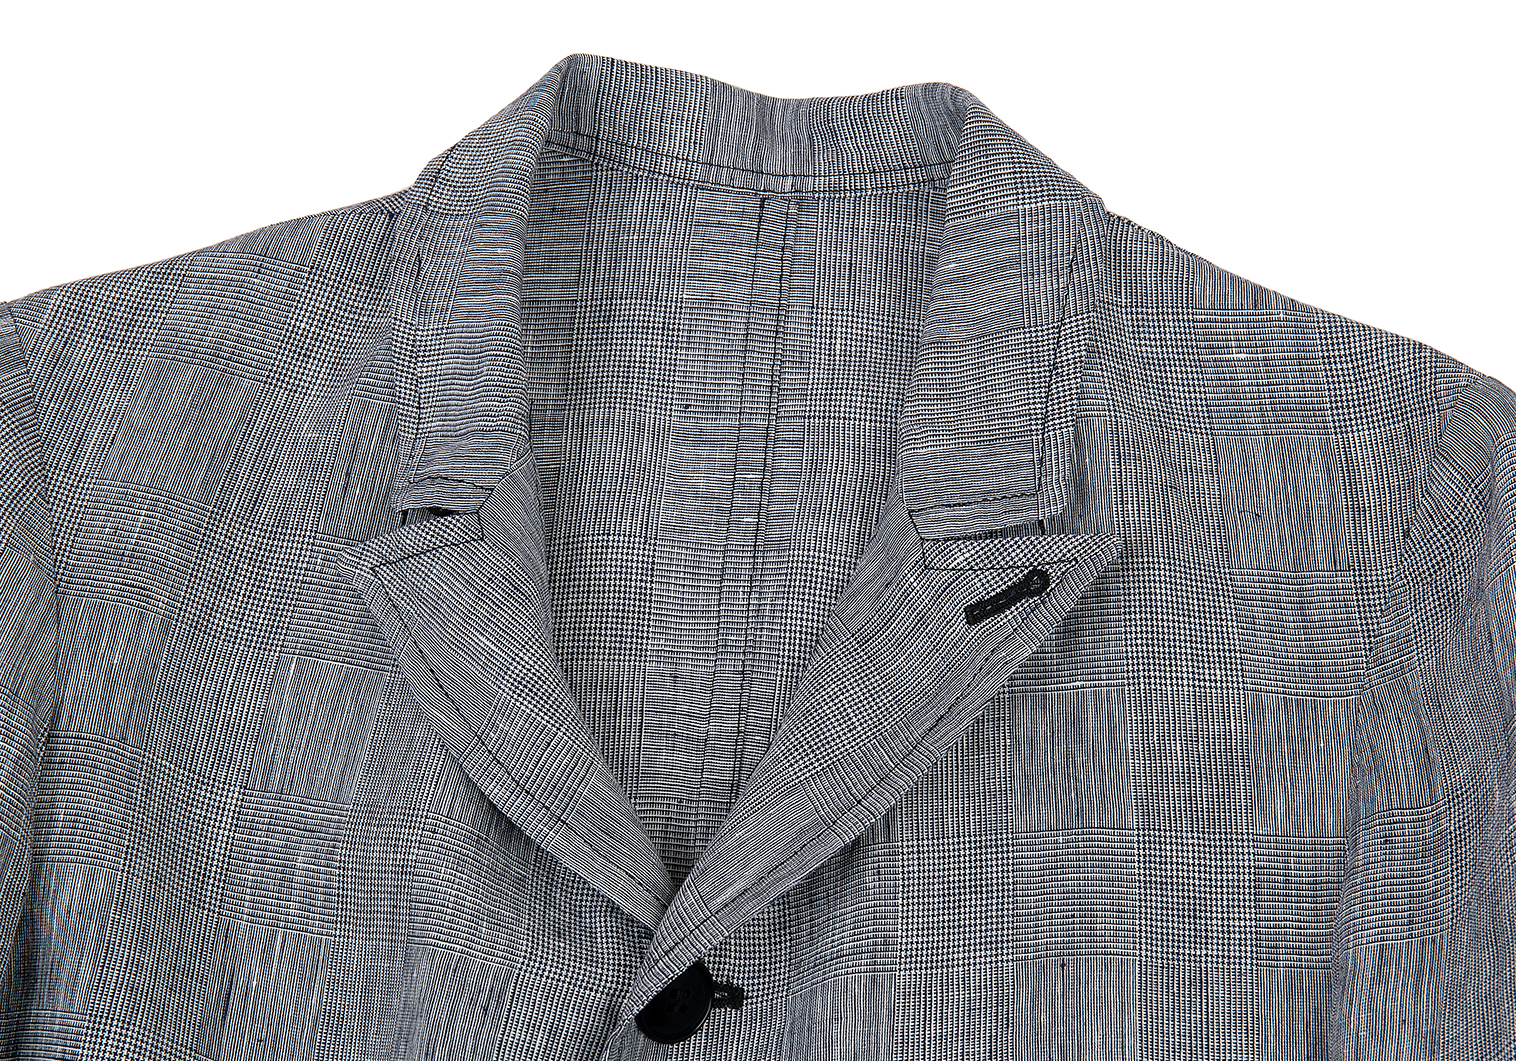 ワイズY's リネングレンチェックポケットデザインジャケット 紺白1